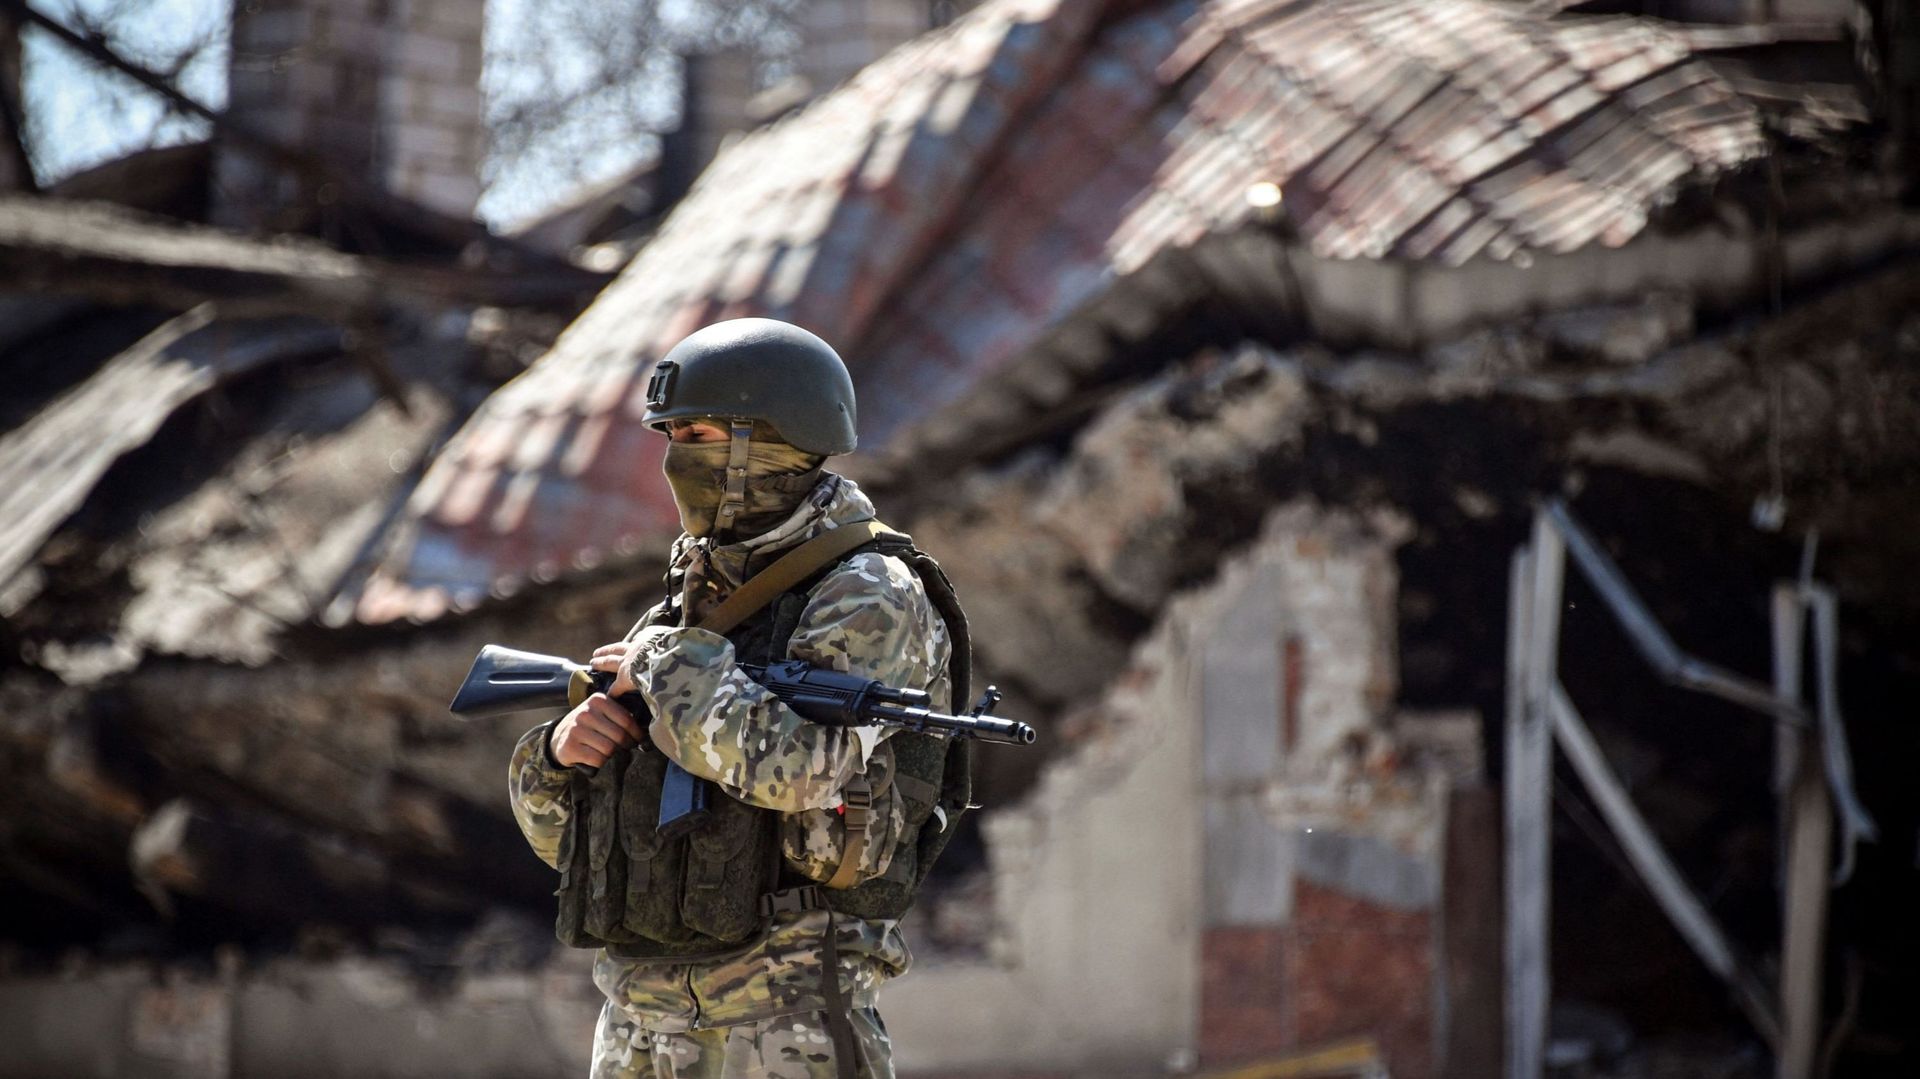 La guerra in Ucraina: un aggiornamento sui progressi della Russia dopo 6 mesi di combattimenti